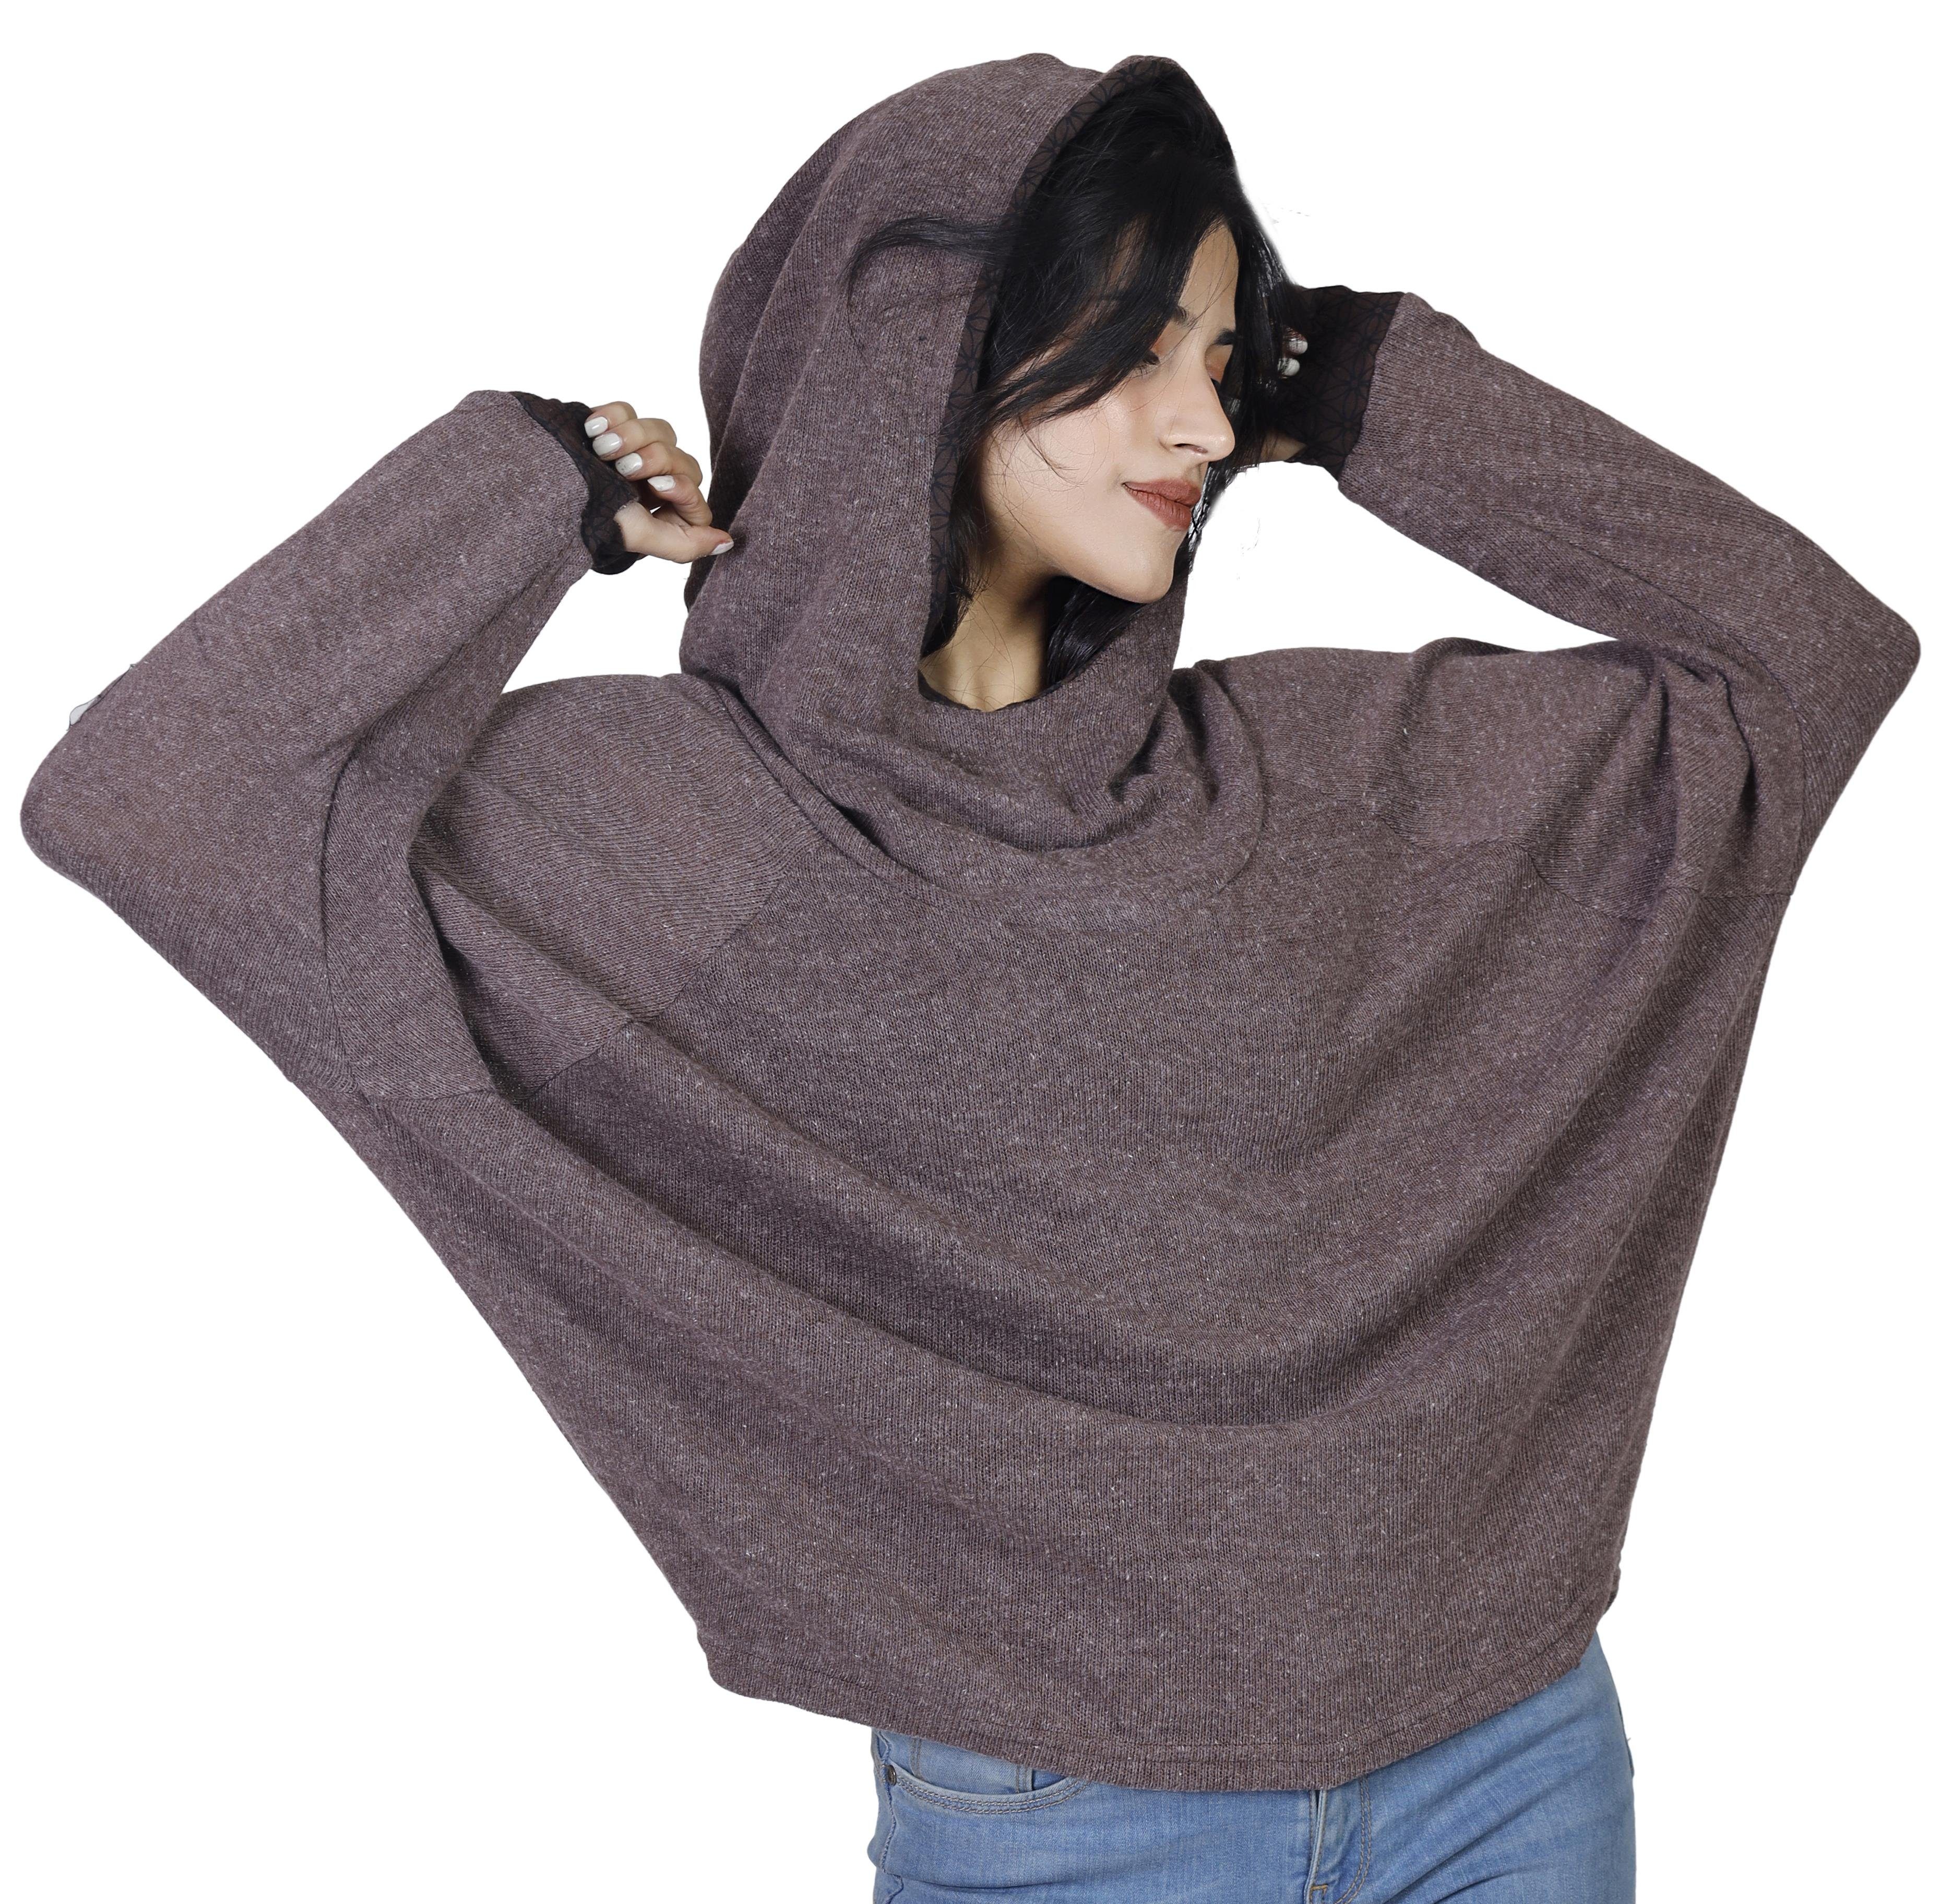 Guru-Shop Longsleeve Pullover, braun Bekleidung alternative Hoody, Kapuzenpullover Sweatshirt, 